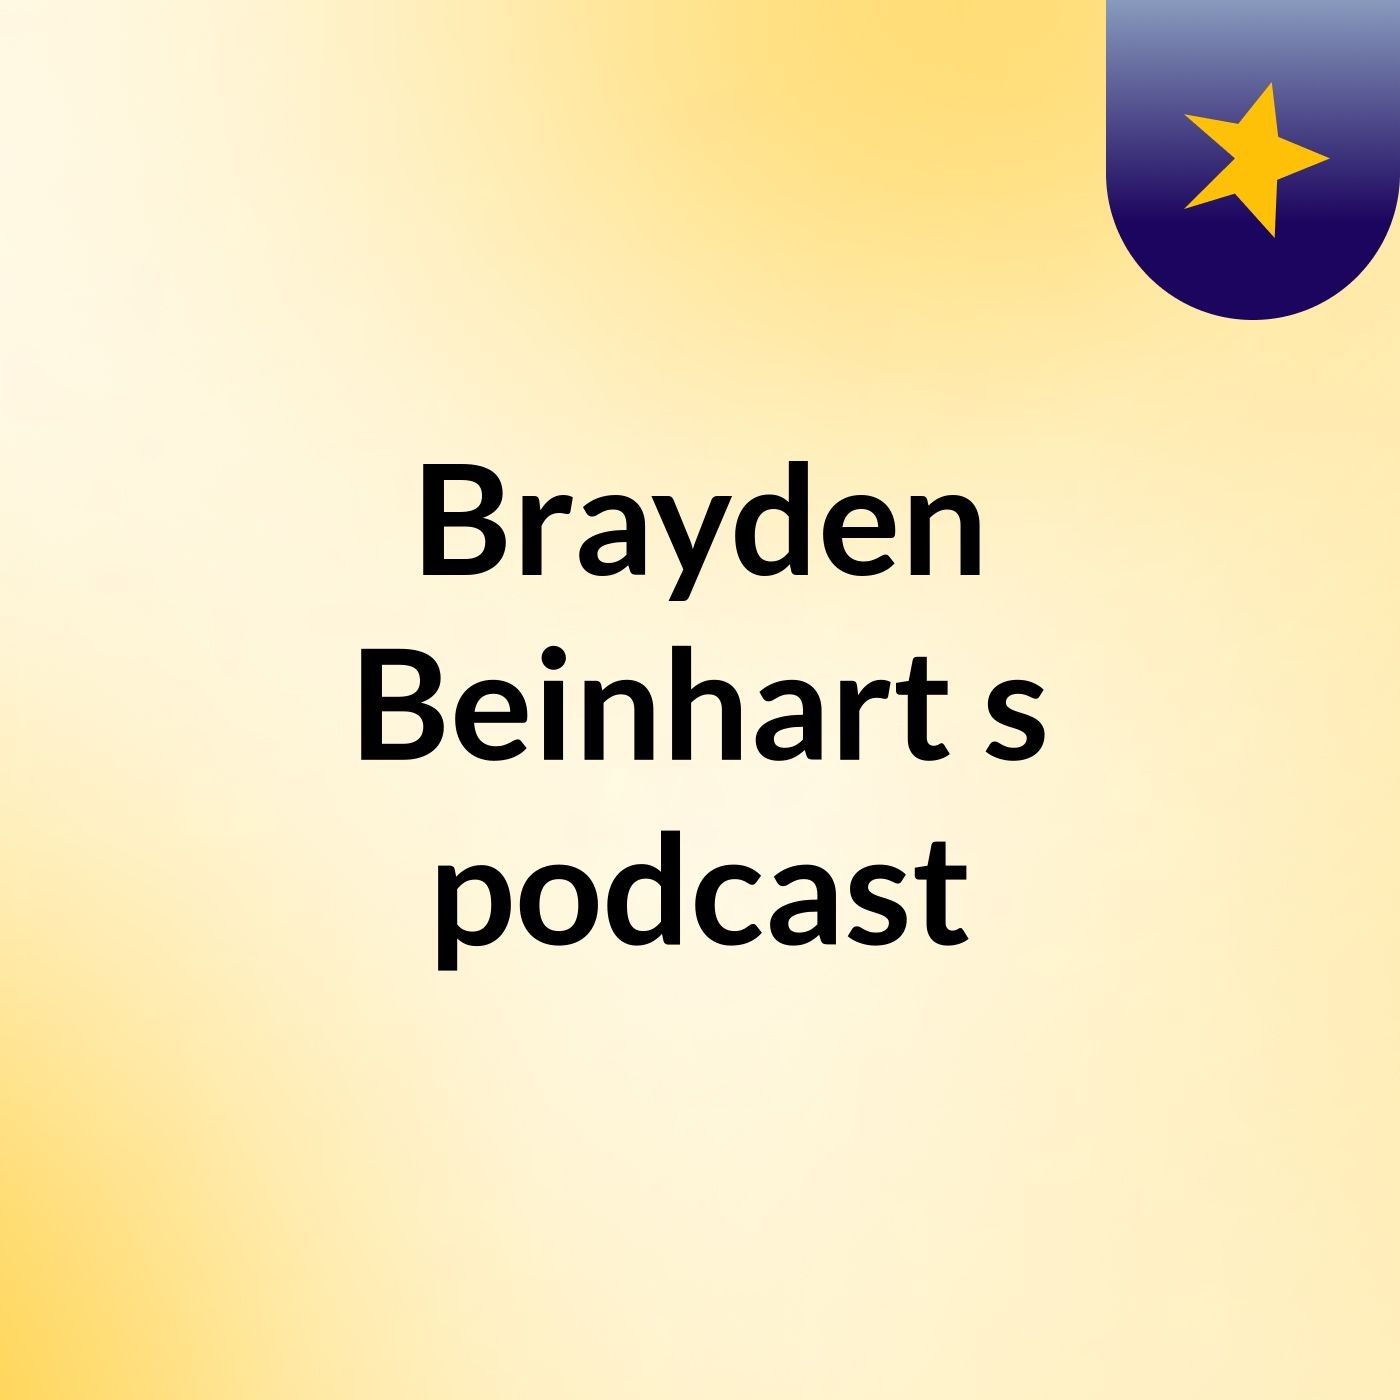 Brayden Beinhart's podcast